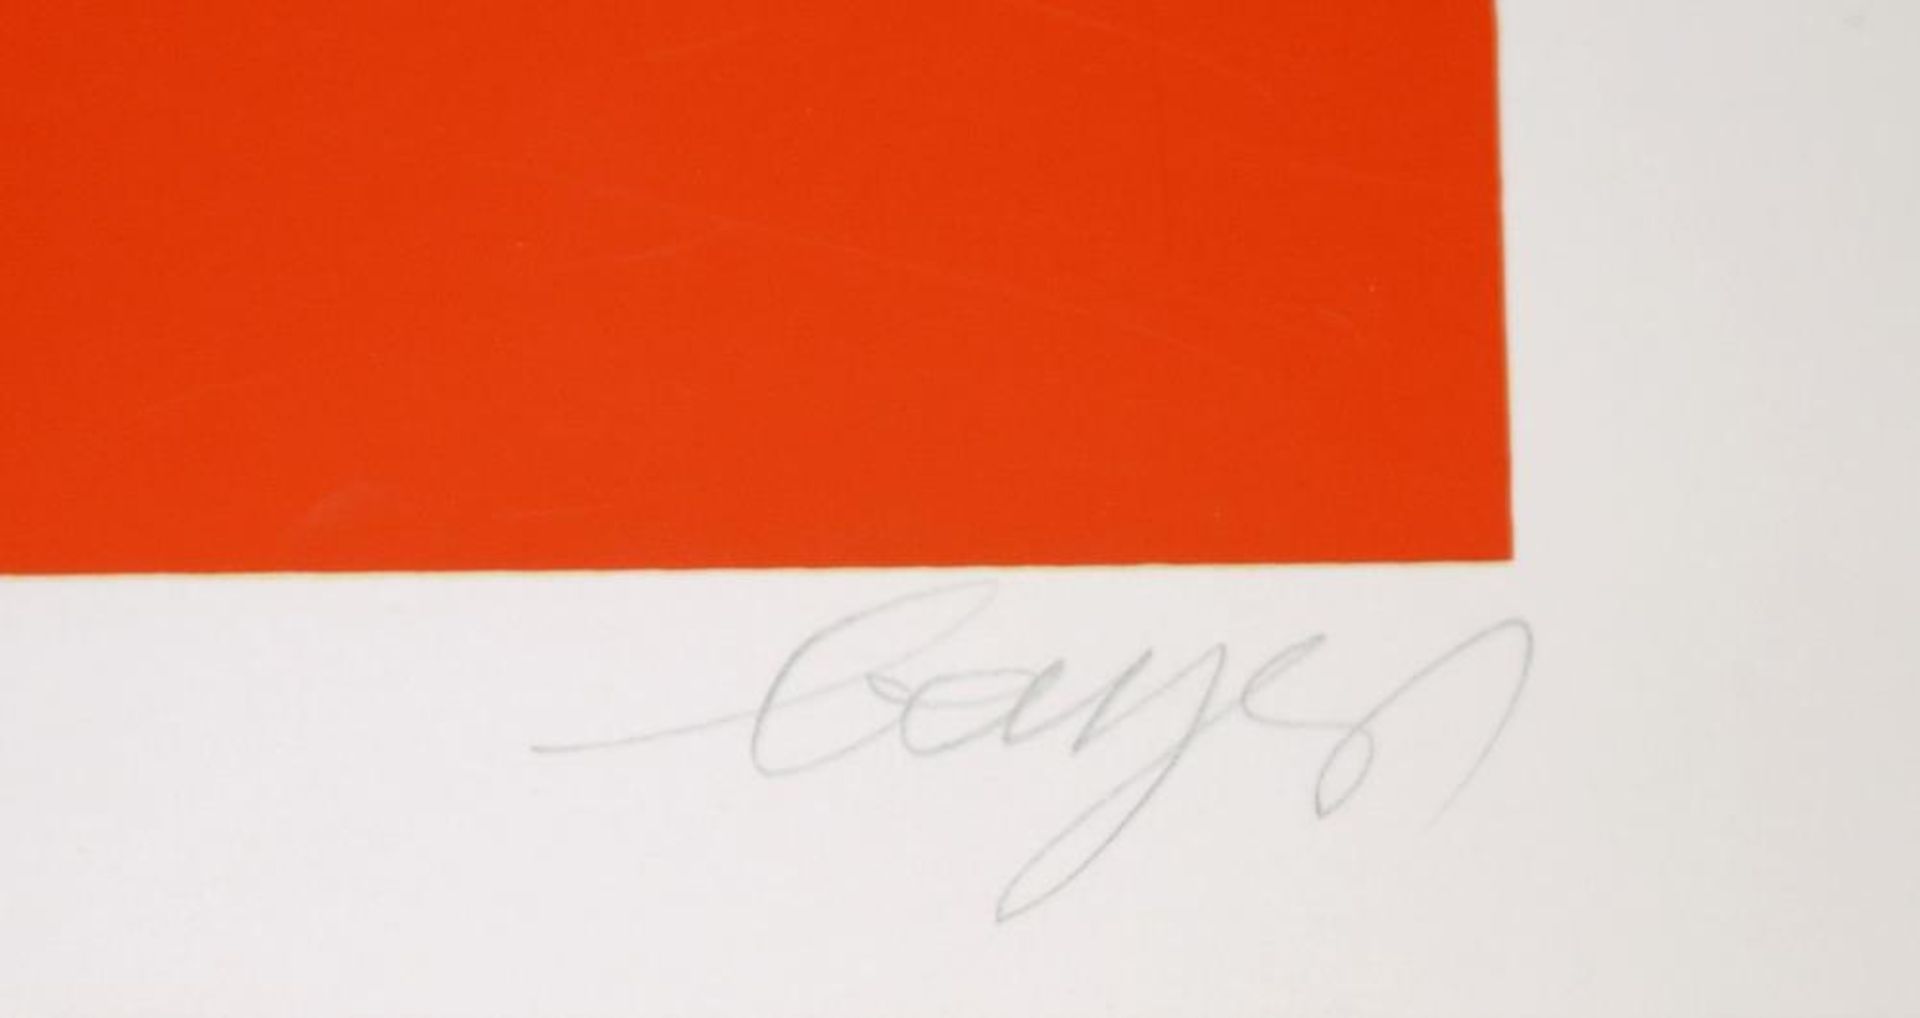 Herbert Bayer, „Abschälung“ (exfoliation), signierter Farbsiebdruck von 1968 Herbert Bayer, 1900 - Bild 2 aus 2